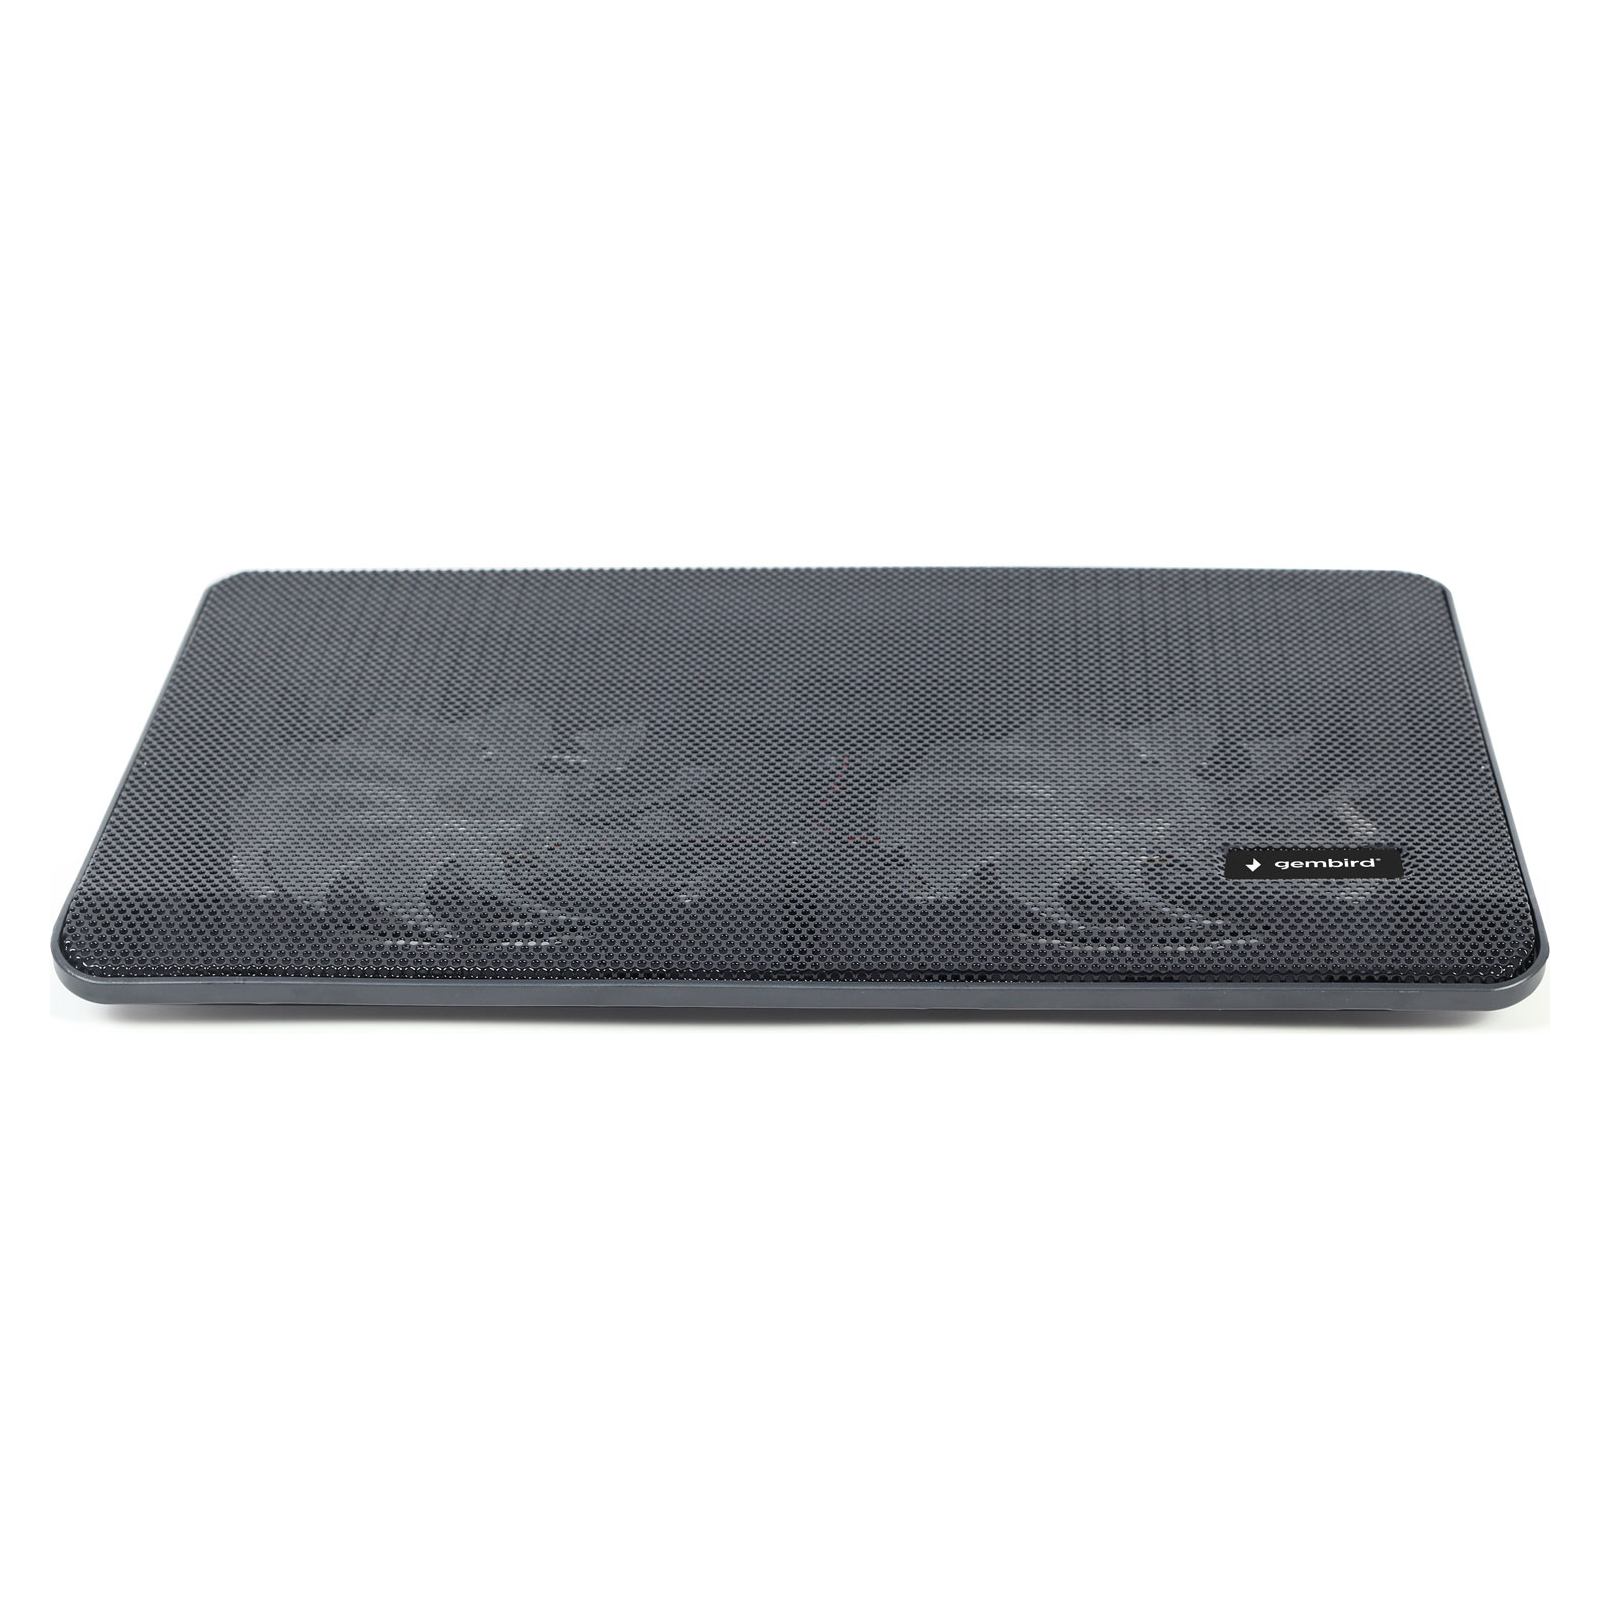 Подставка для ноутбука Gembird до 15.6", 2x125мм вентиляторы, черный (NBS-2F15-05) изображение 3